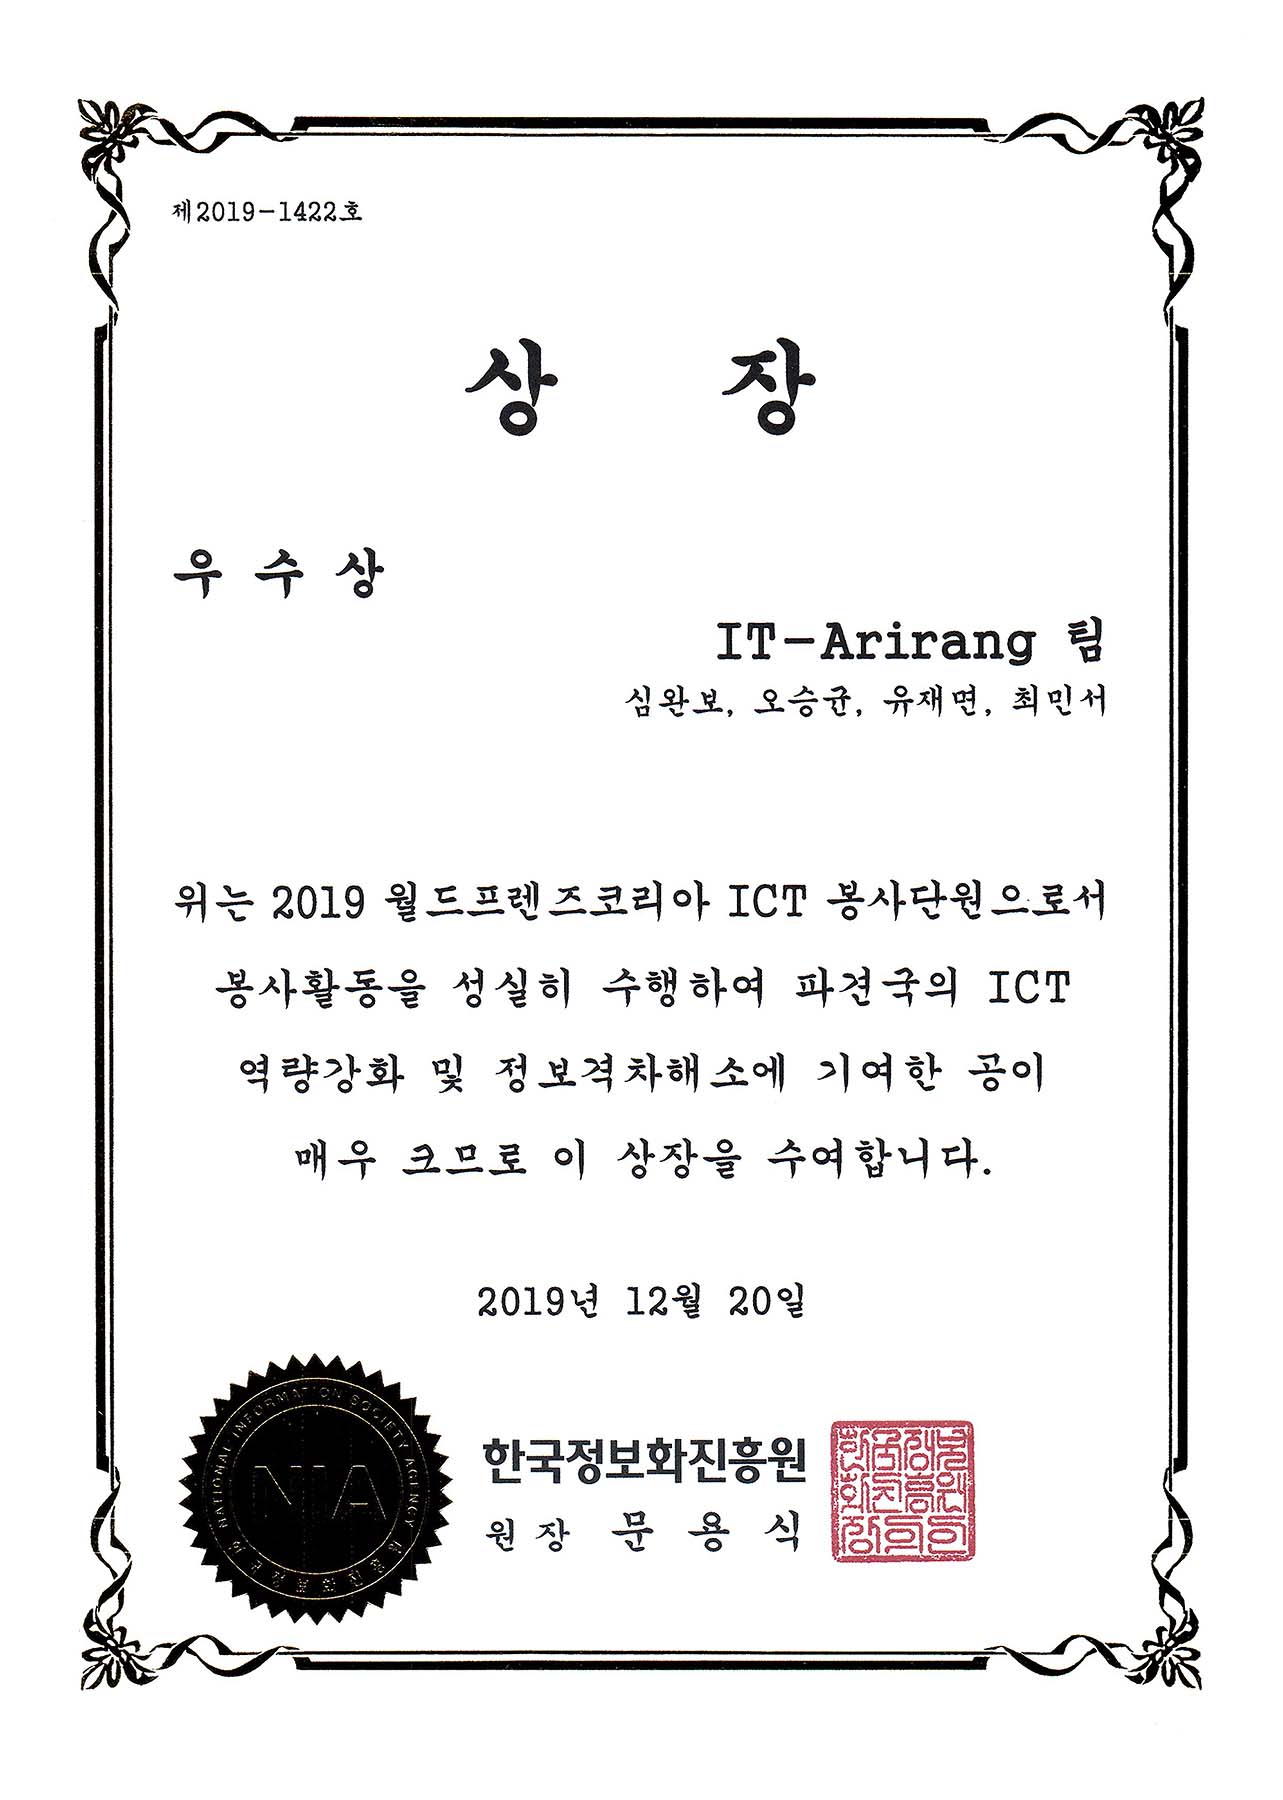 2019 월드프렌즈 ICT 봉사단 우수상(한국정보화진흥원장상) 수상 1번째 파일